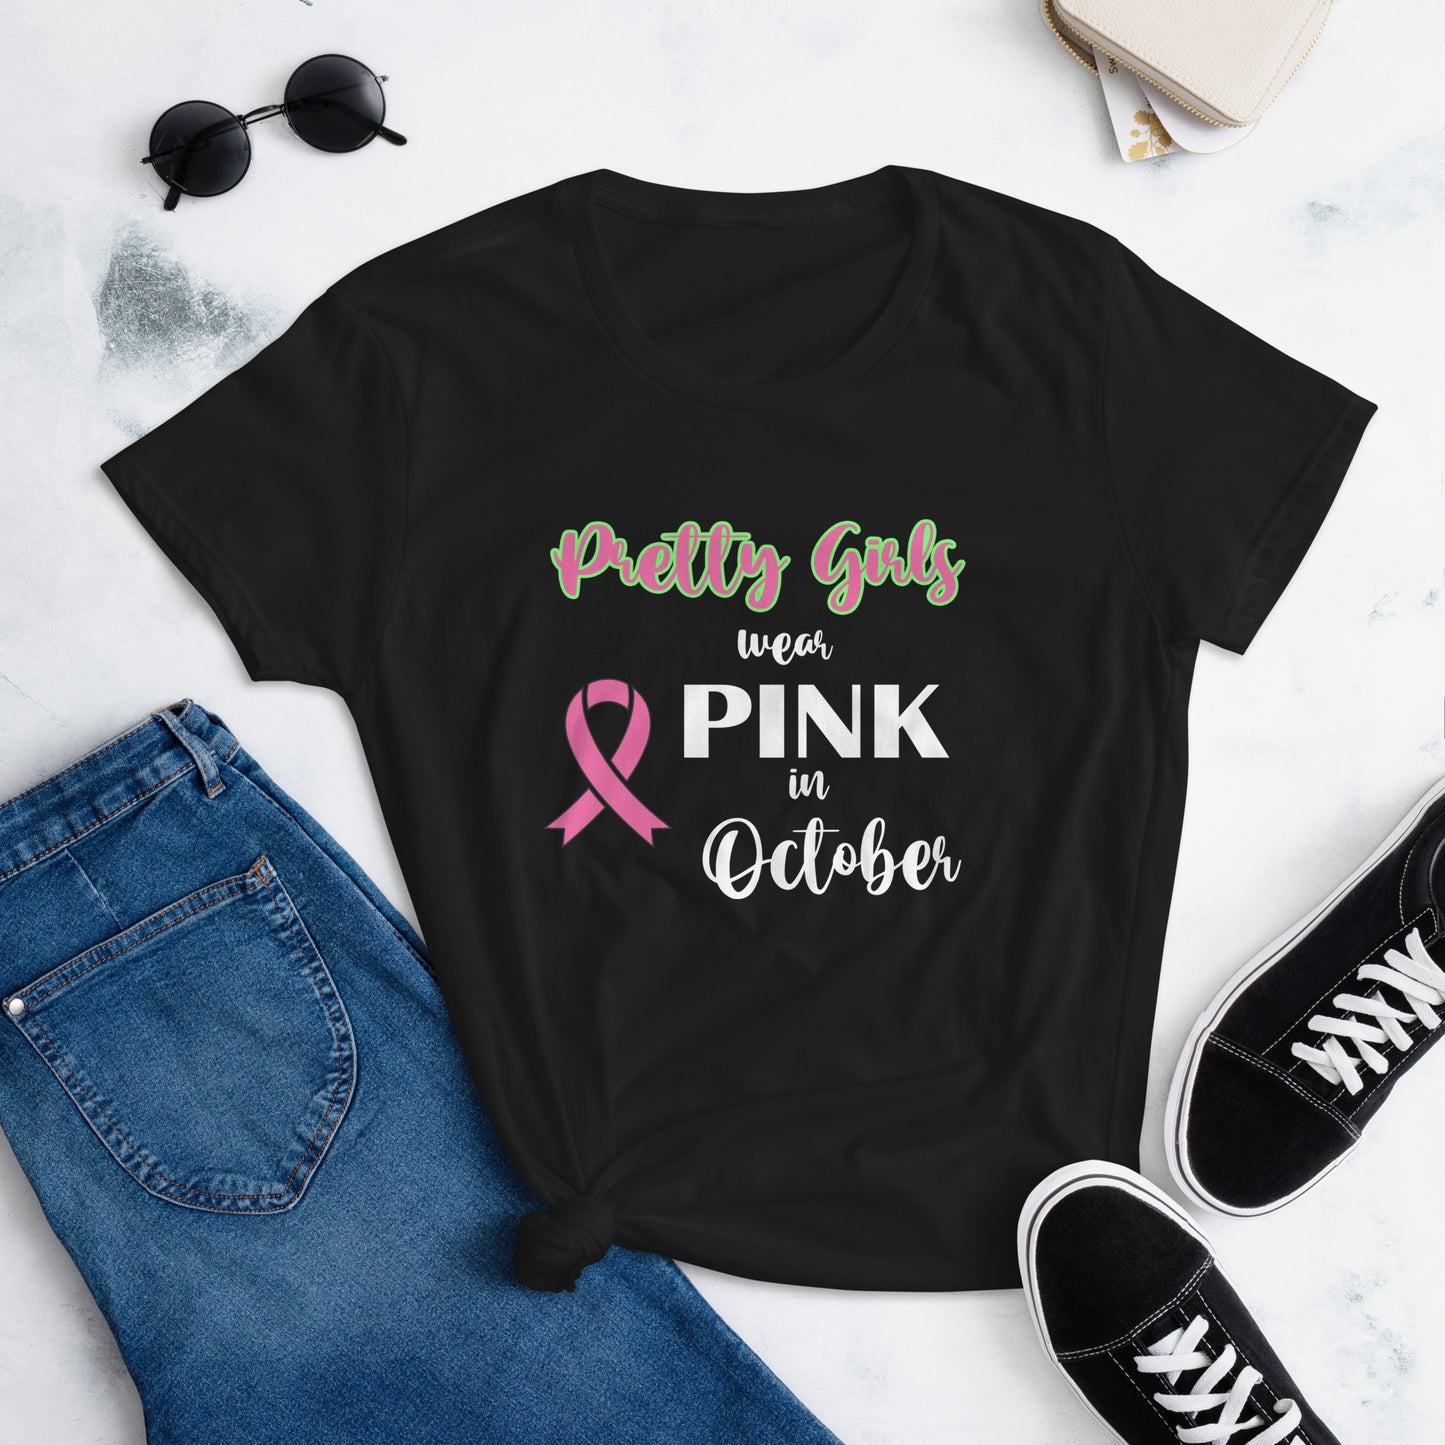 AKAs Pretty Girls Wear Pink in October